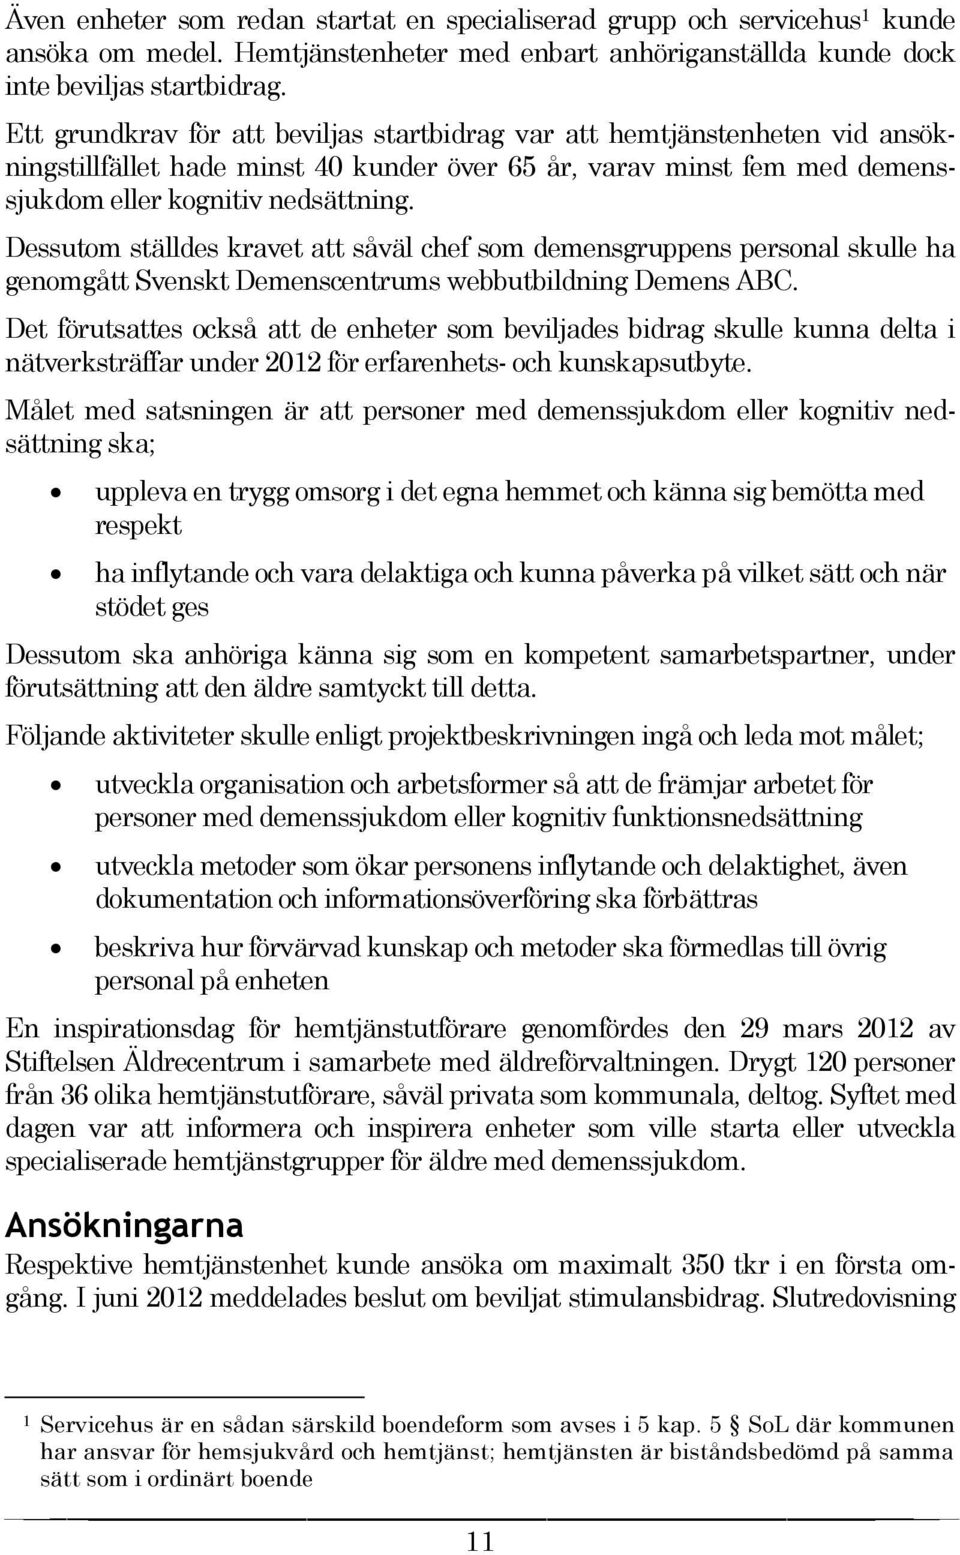 Dessutom ställdes kravet att såväl chef som demensgruppens personal skulle ha genomgått Svenskt Demenscentrums webbutbildning Demens ABC.